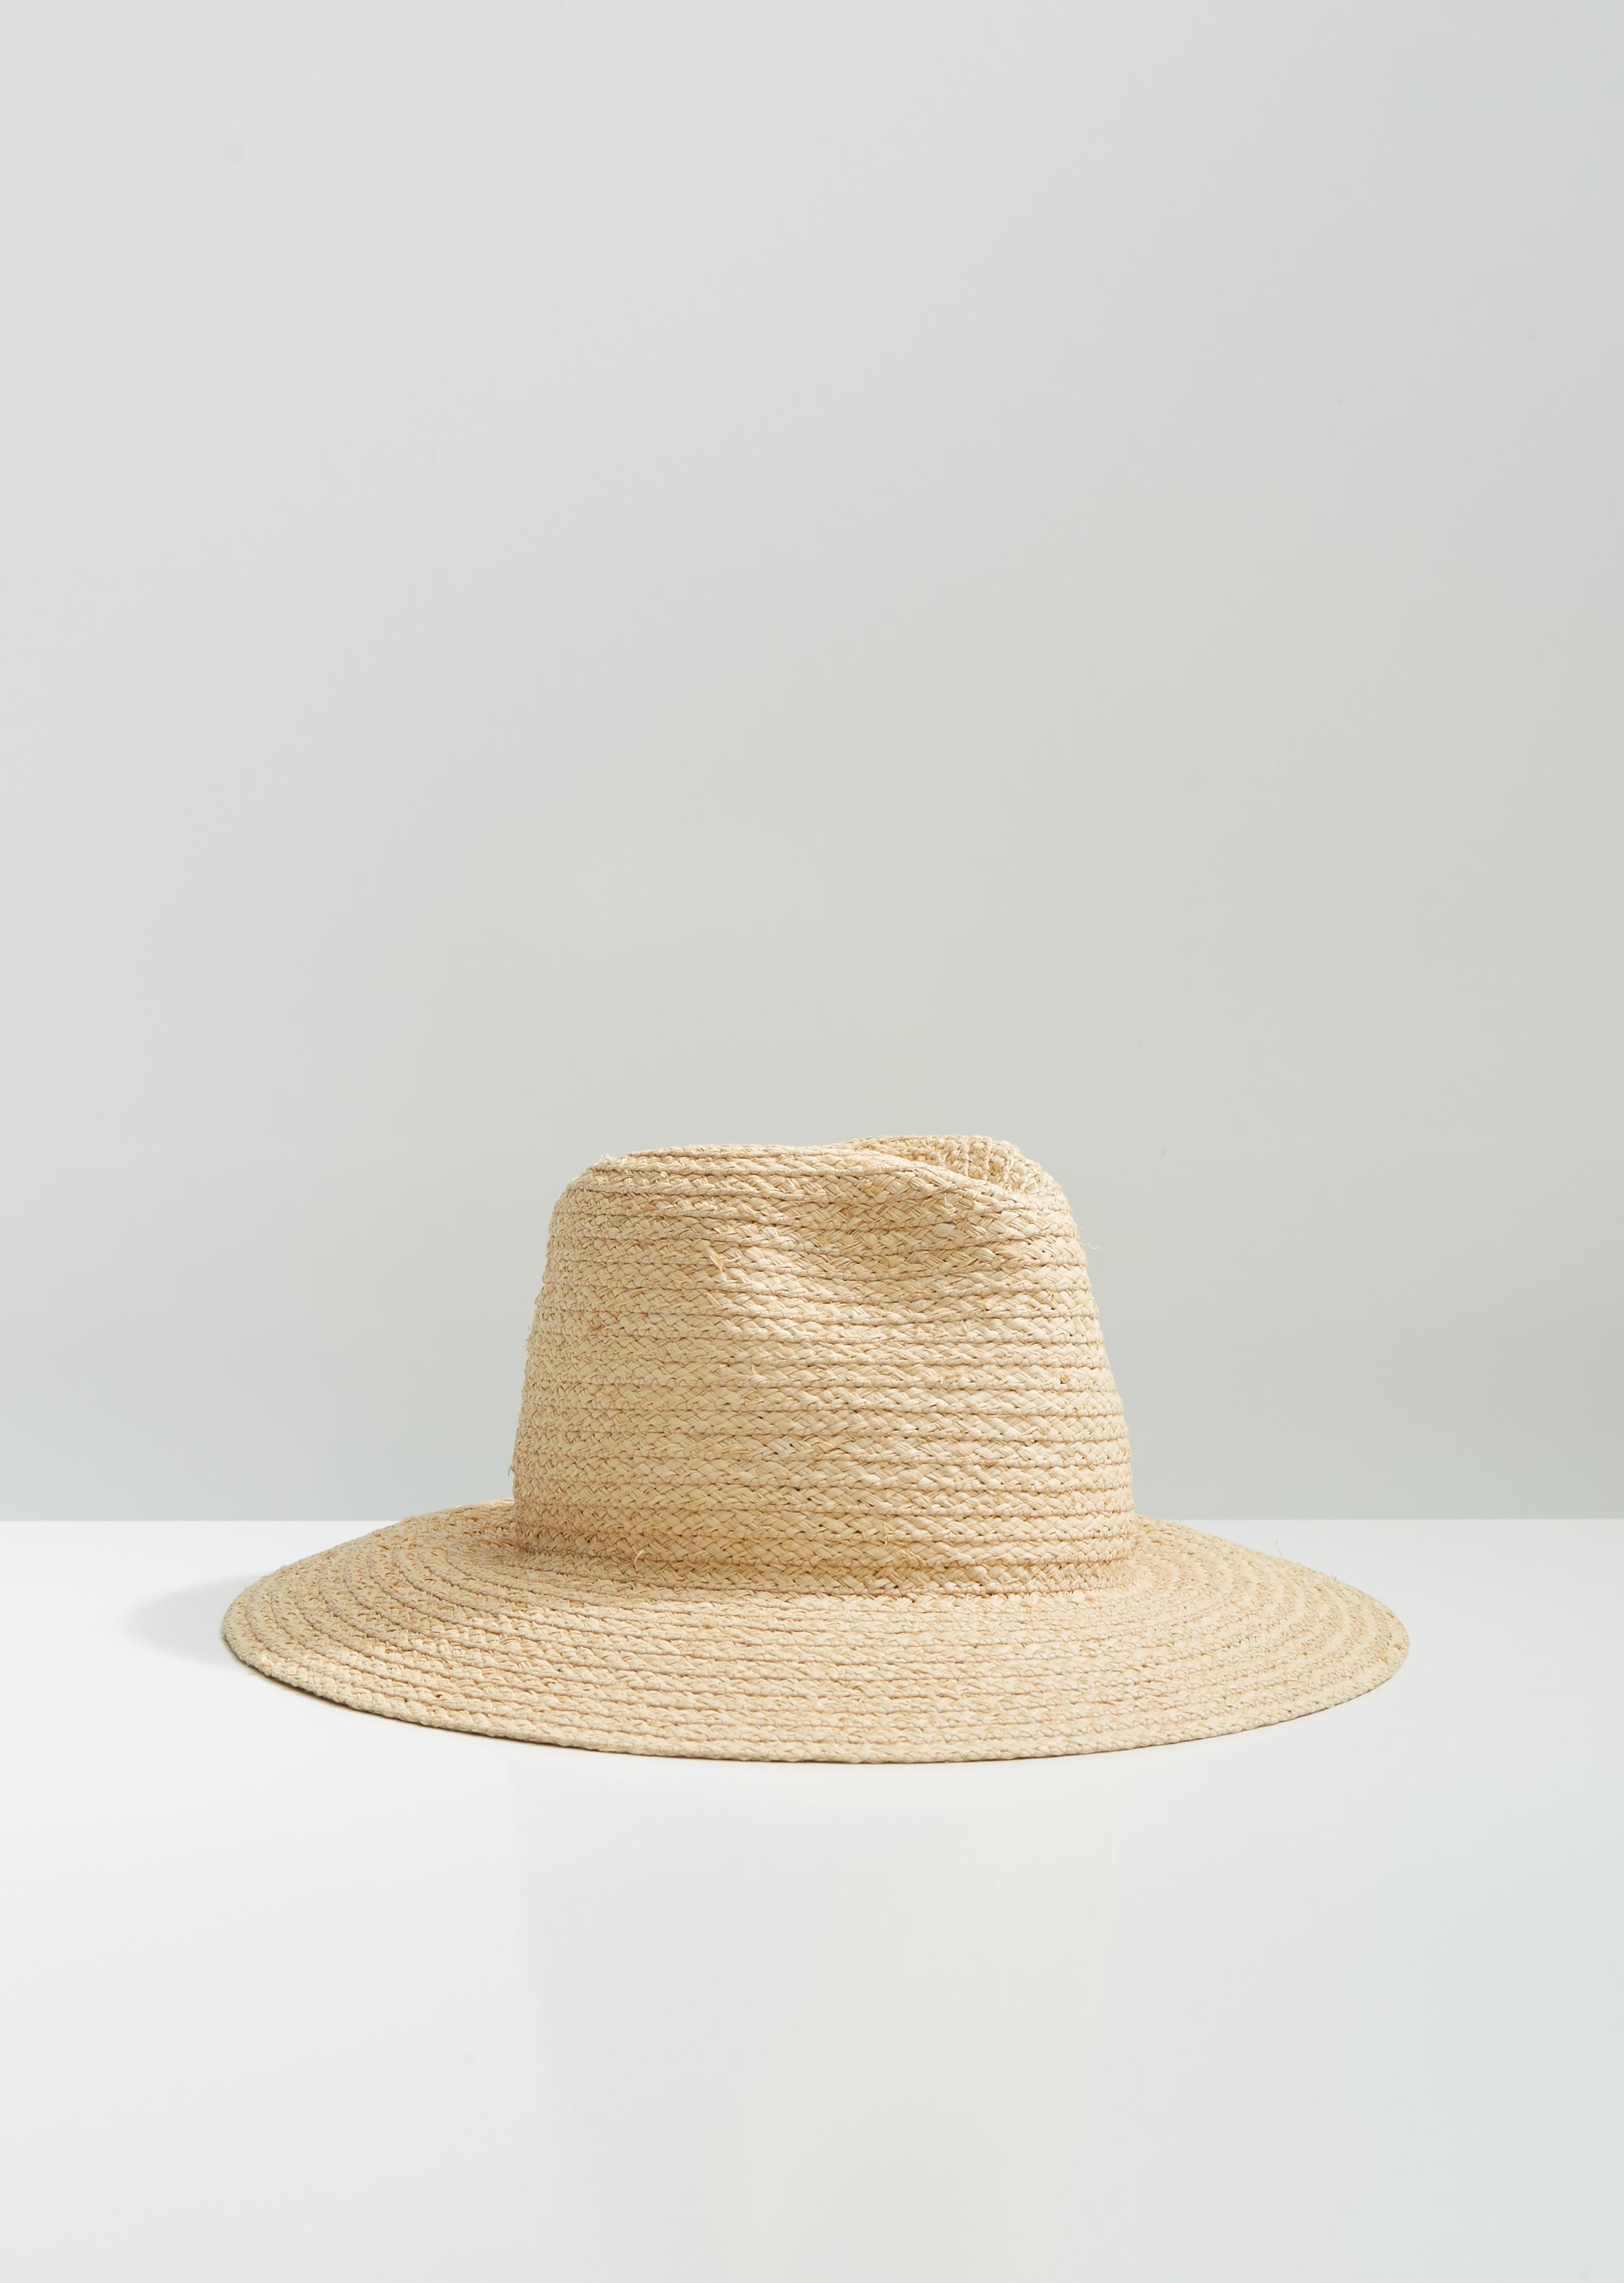 St Lucia Hat by Albertus Swanepoel- La Garçonne